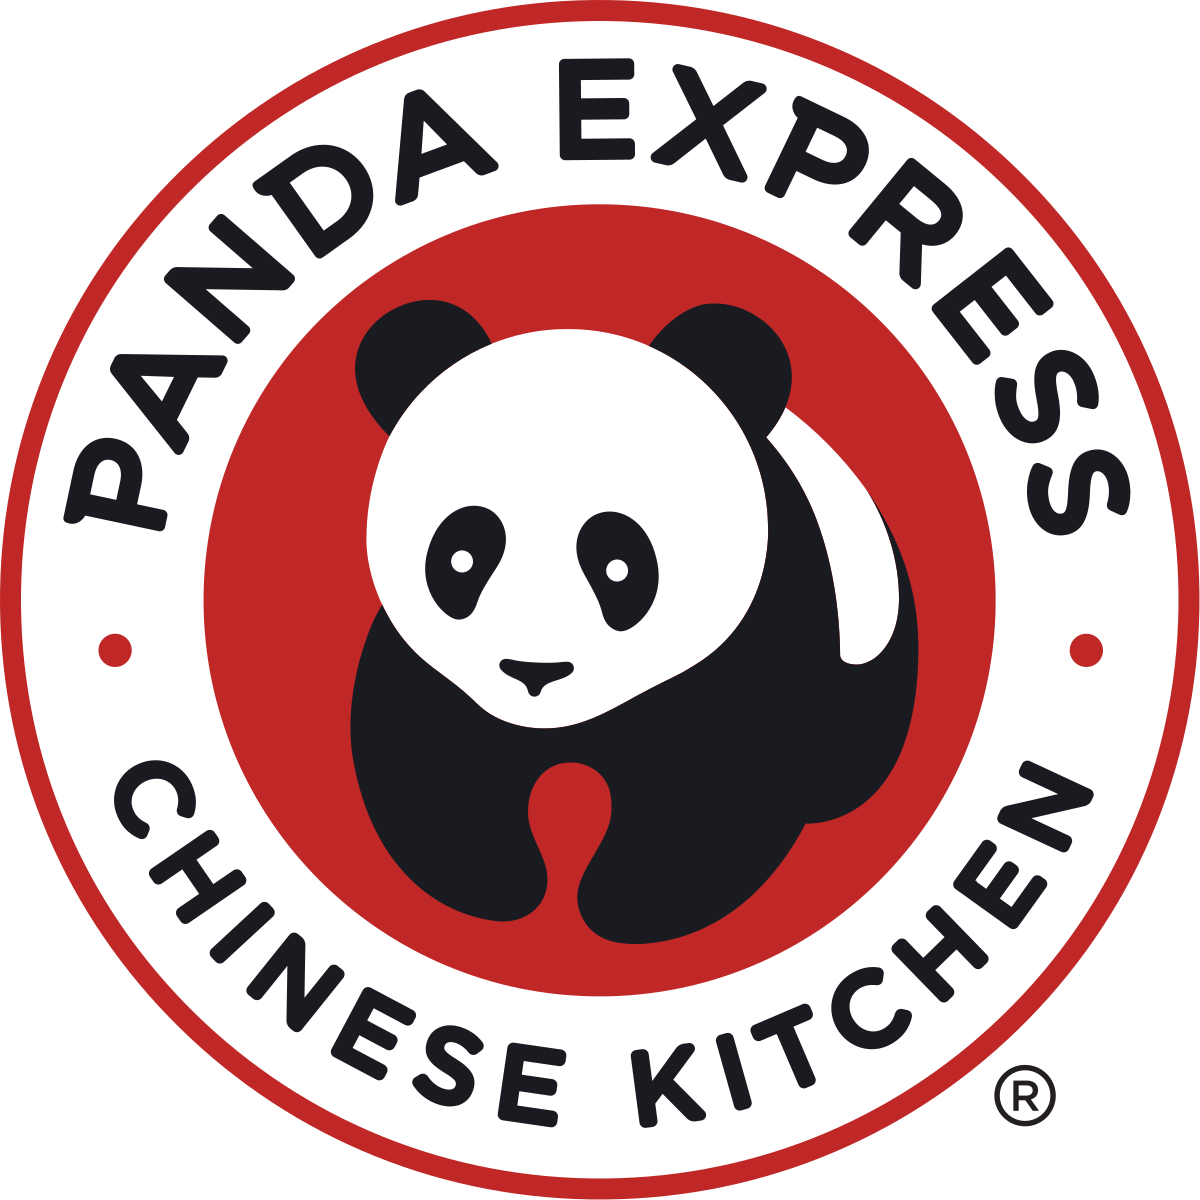 Panda Express logo.png